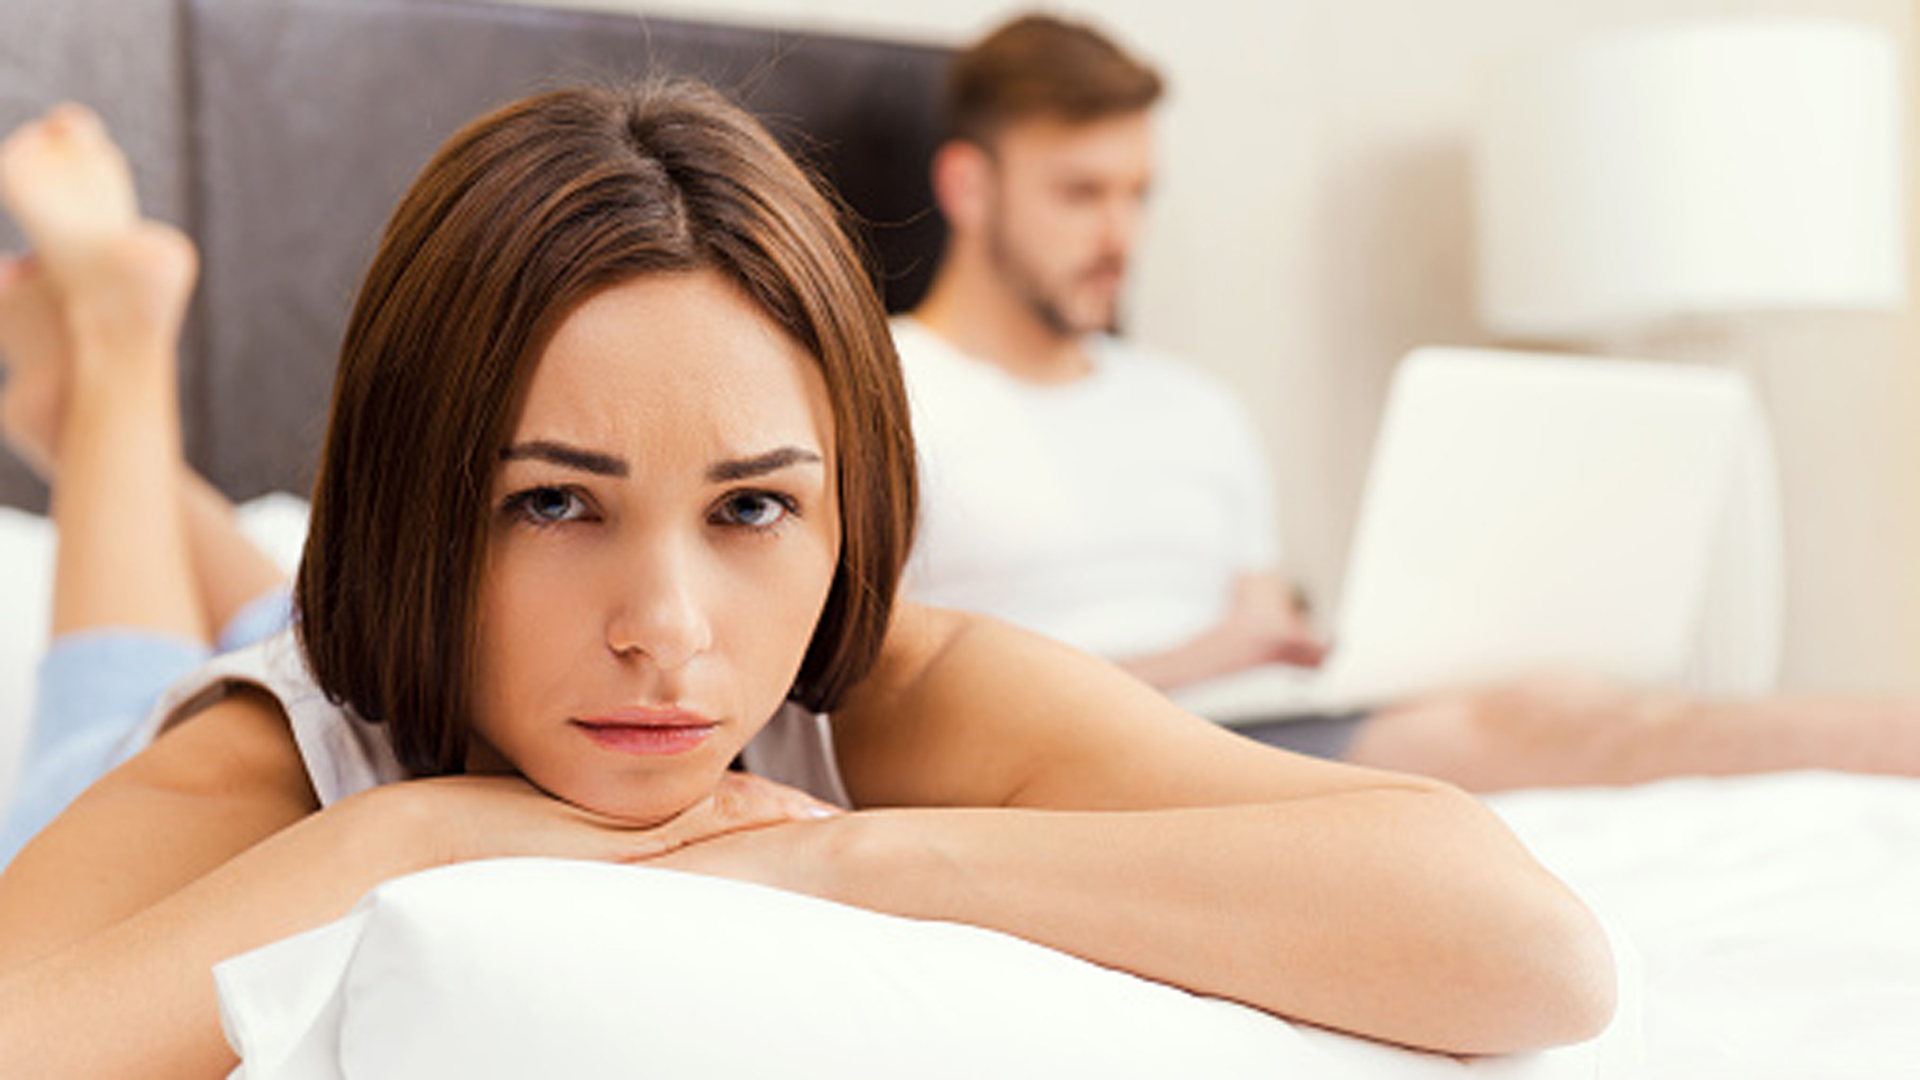 Por qué las mujeres esperan menos placer en la cama, según la ciencia